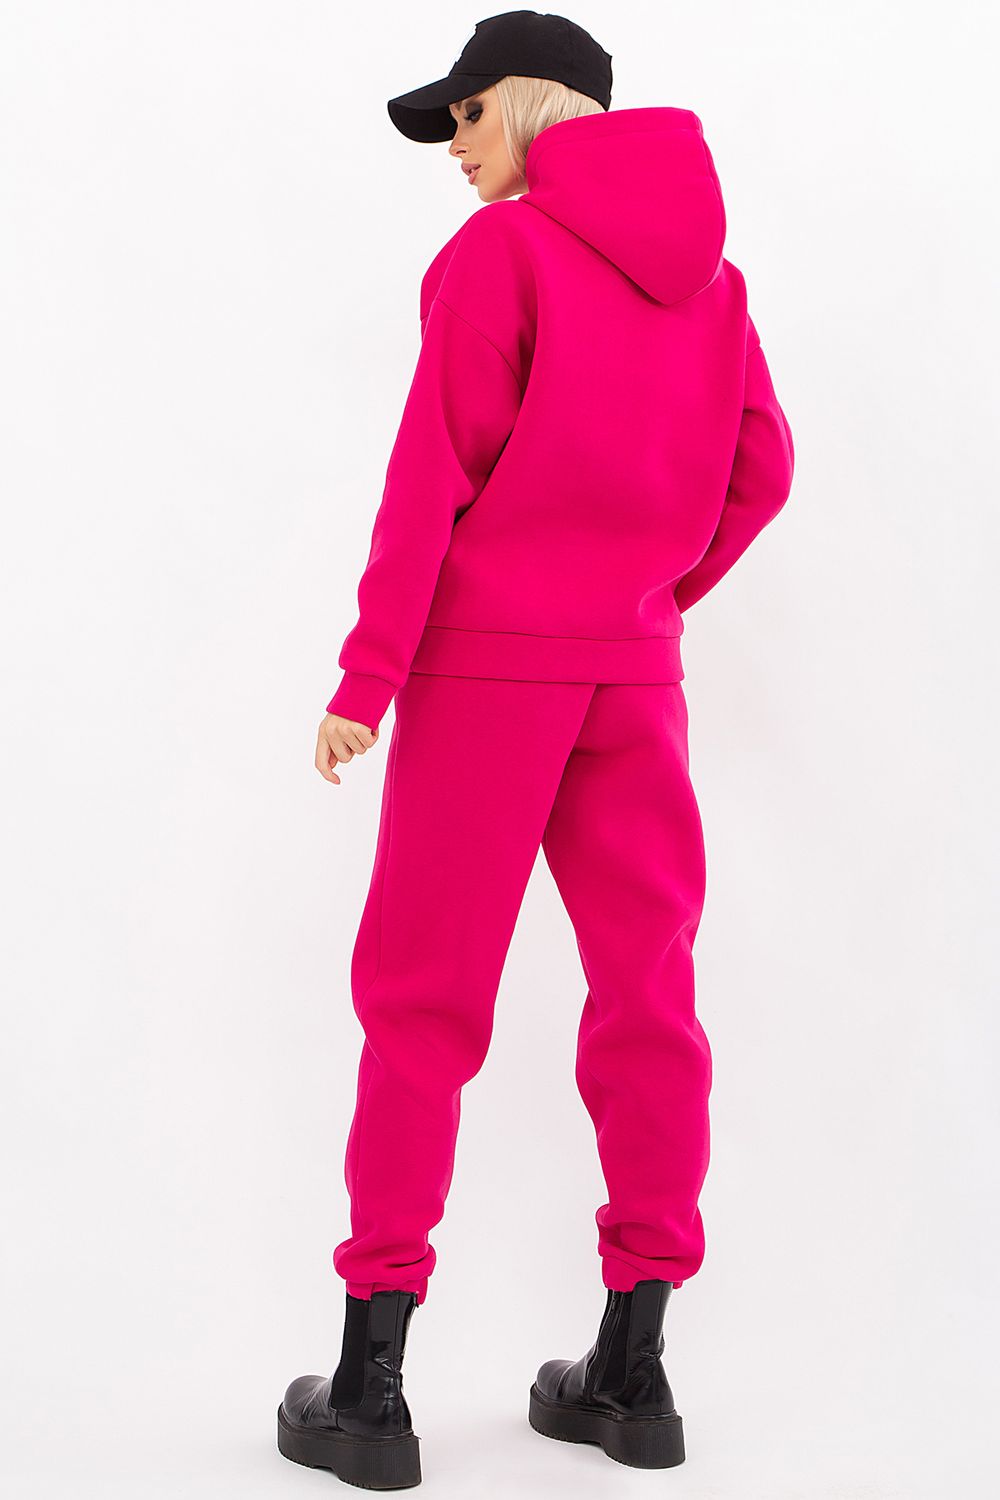 Теплий жіночий спортивний костюм з начосом яскраво-рожевий - фото